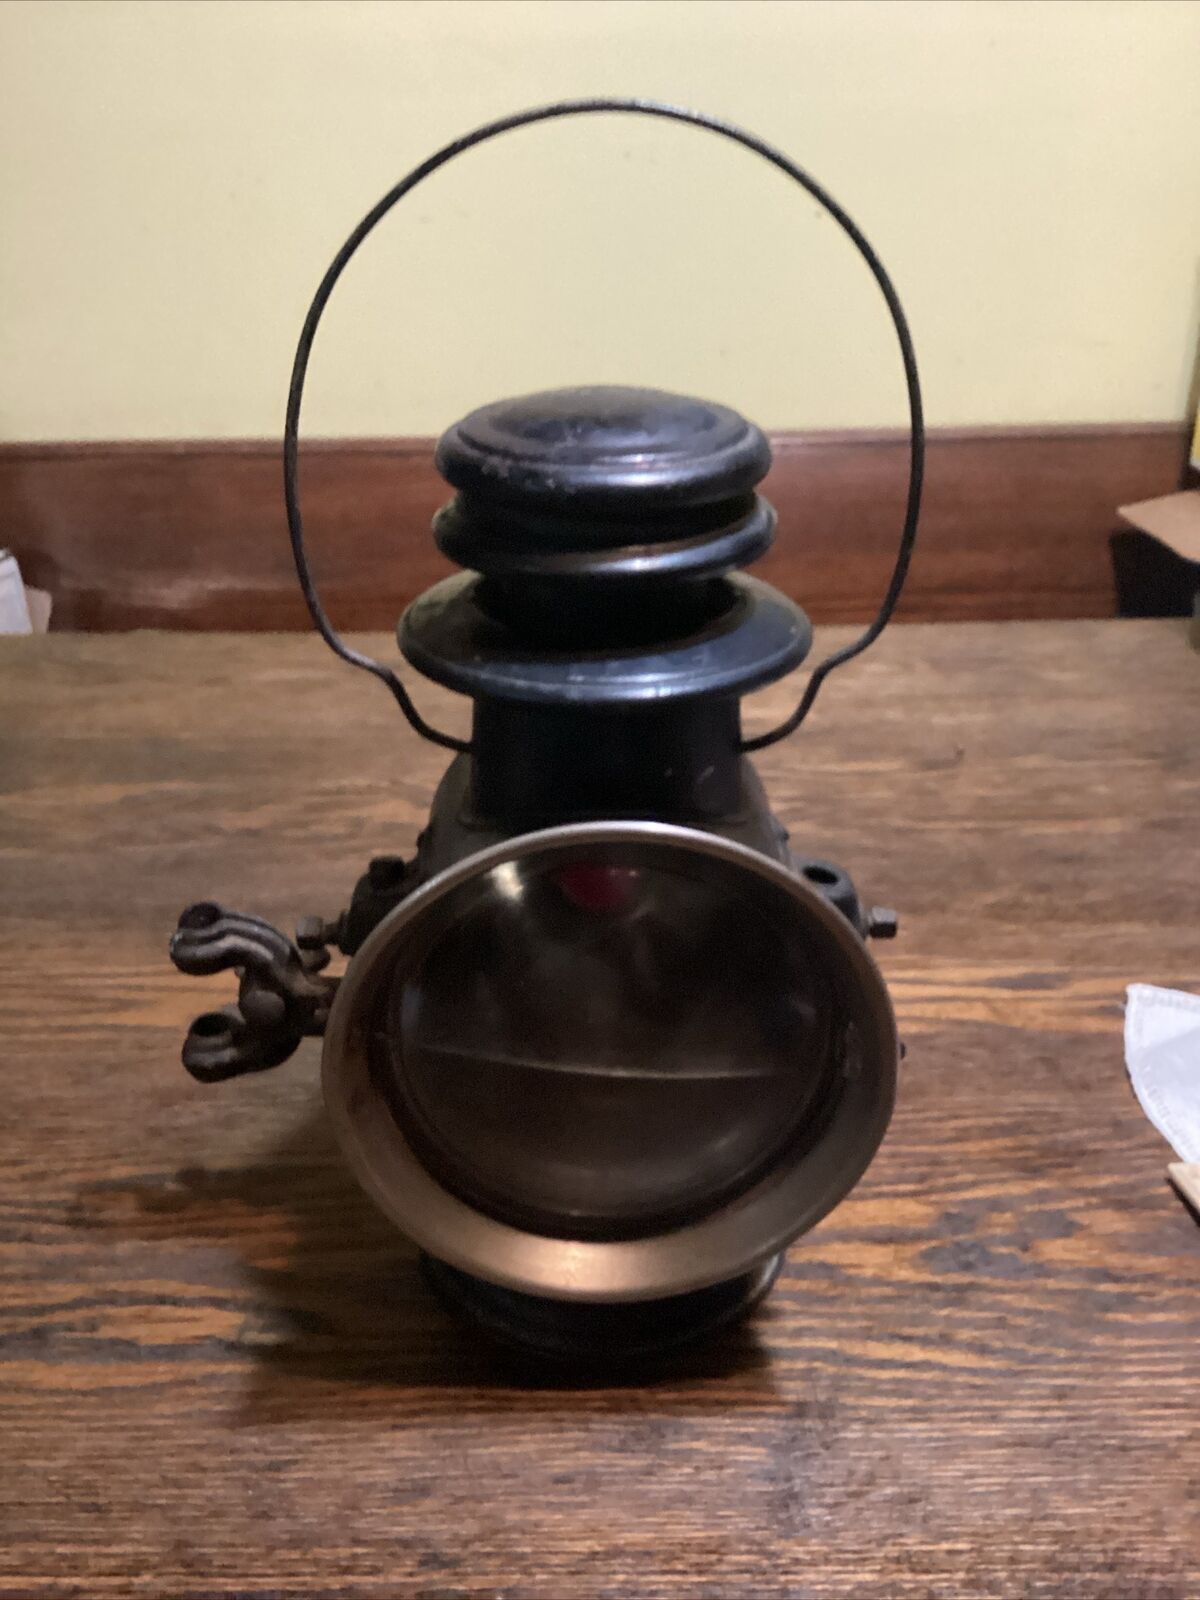 Vintage Dietz Union Driving Lamp 11 1/2